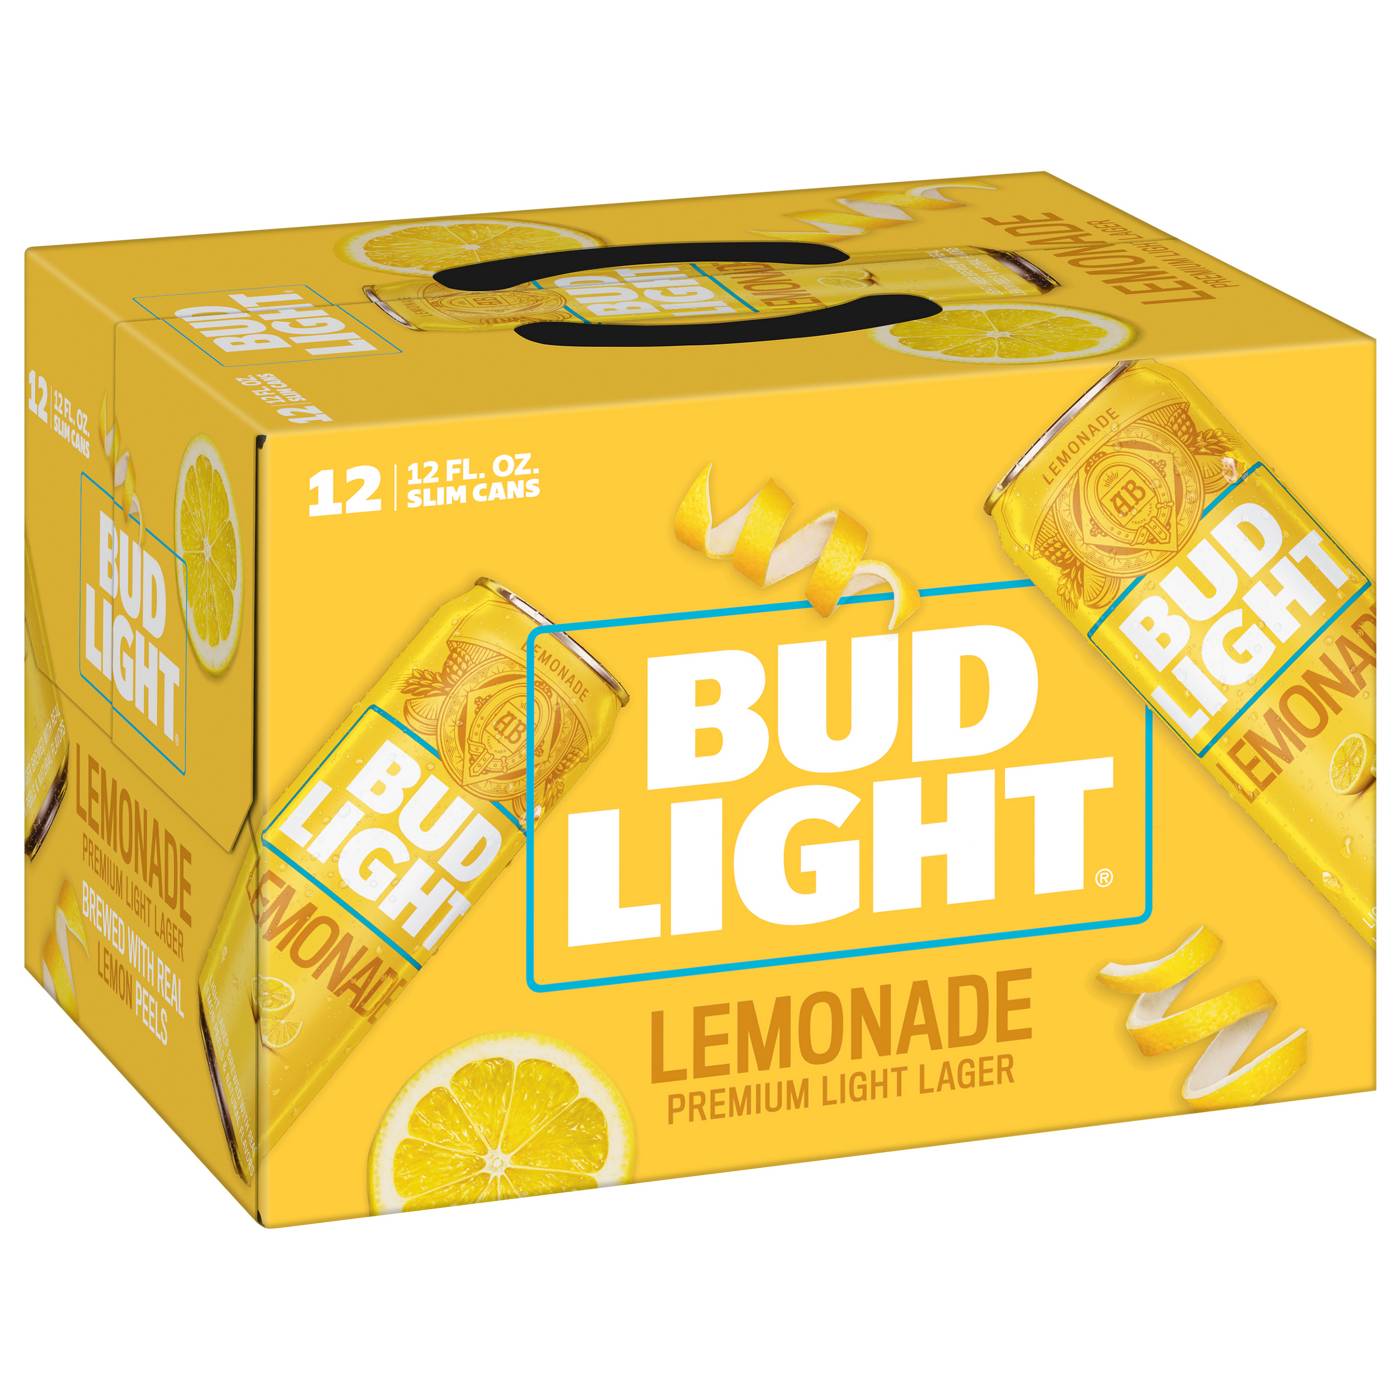 Bud Light Lemonade Beer 12 oz Cans; image 1 of 2